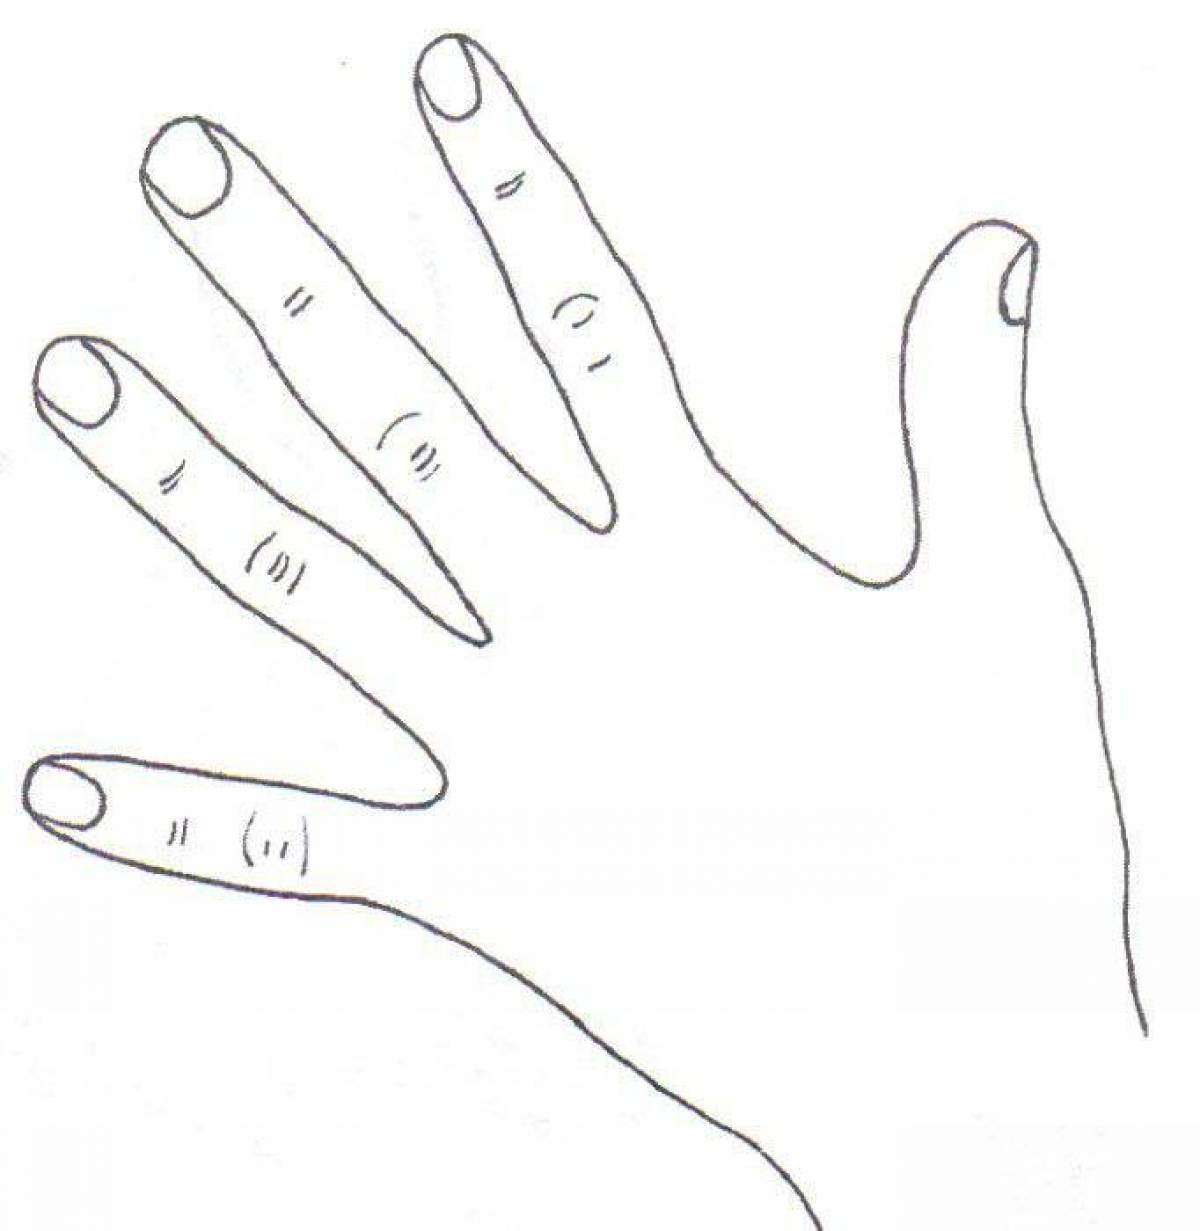 Hand #1